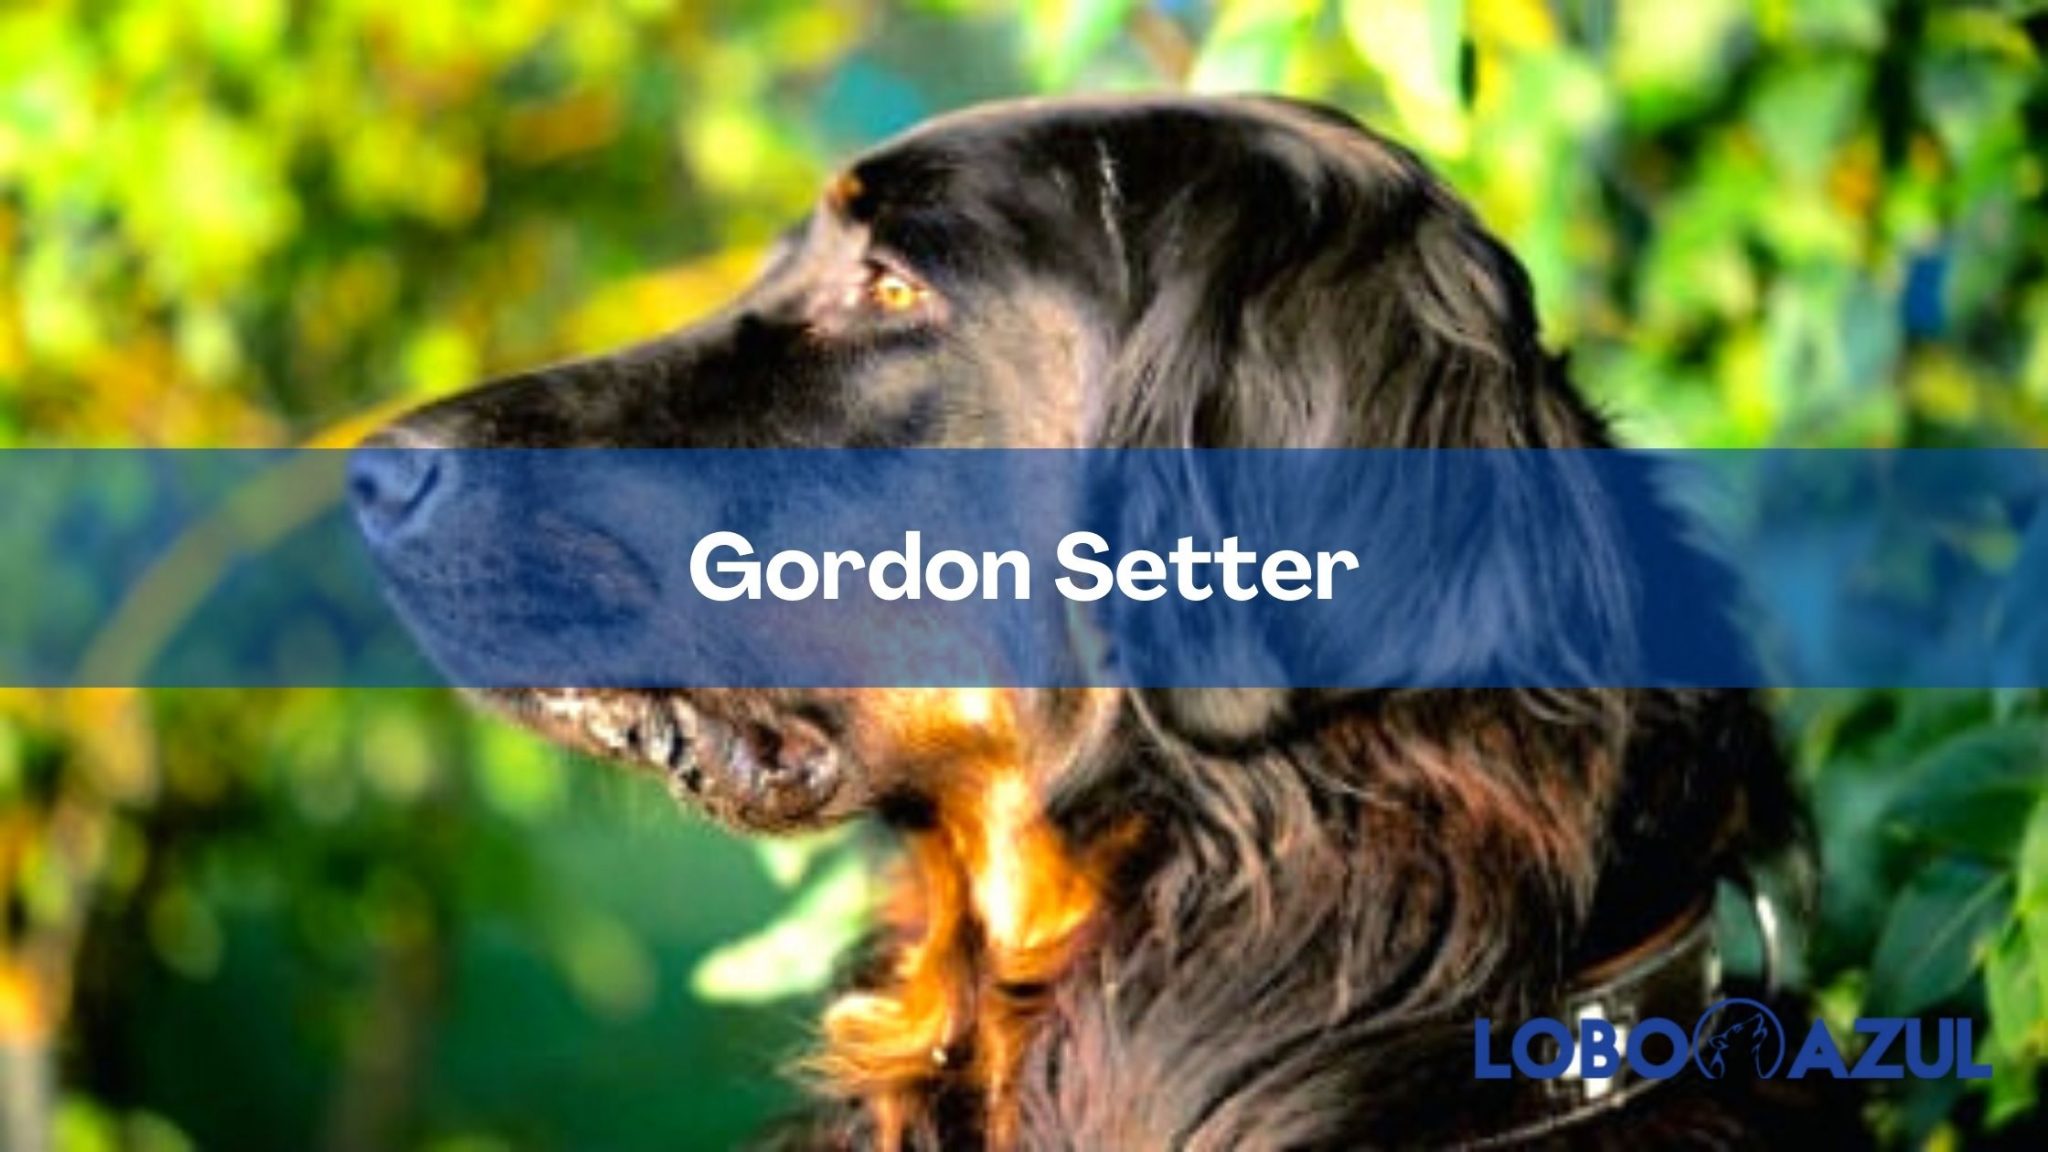 Gordon Setter - Descubre su personalidad y apariencia distinguida